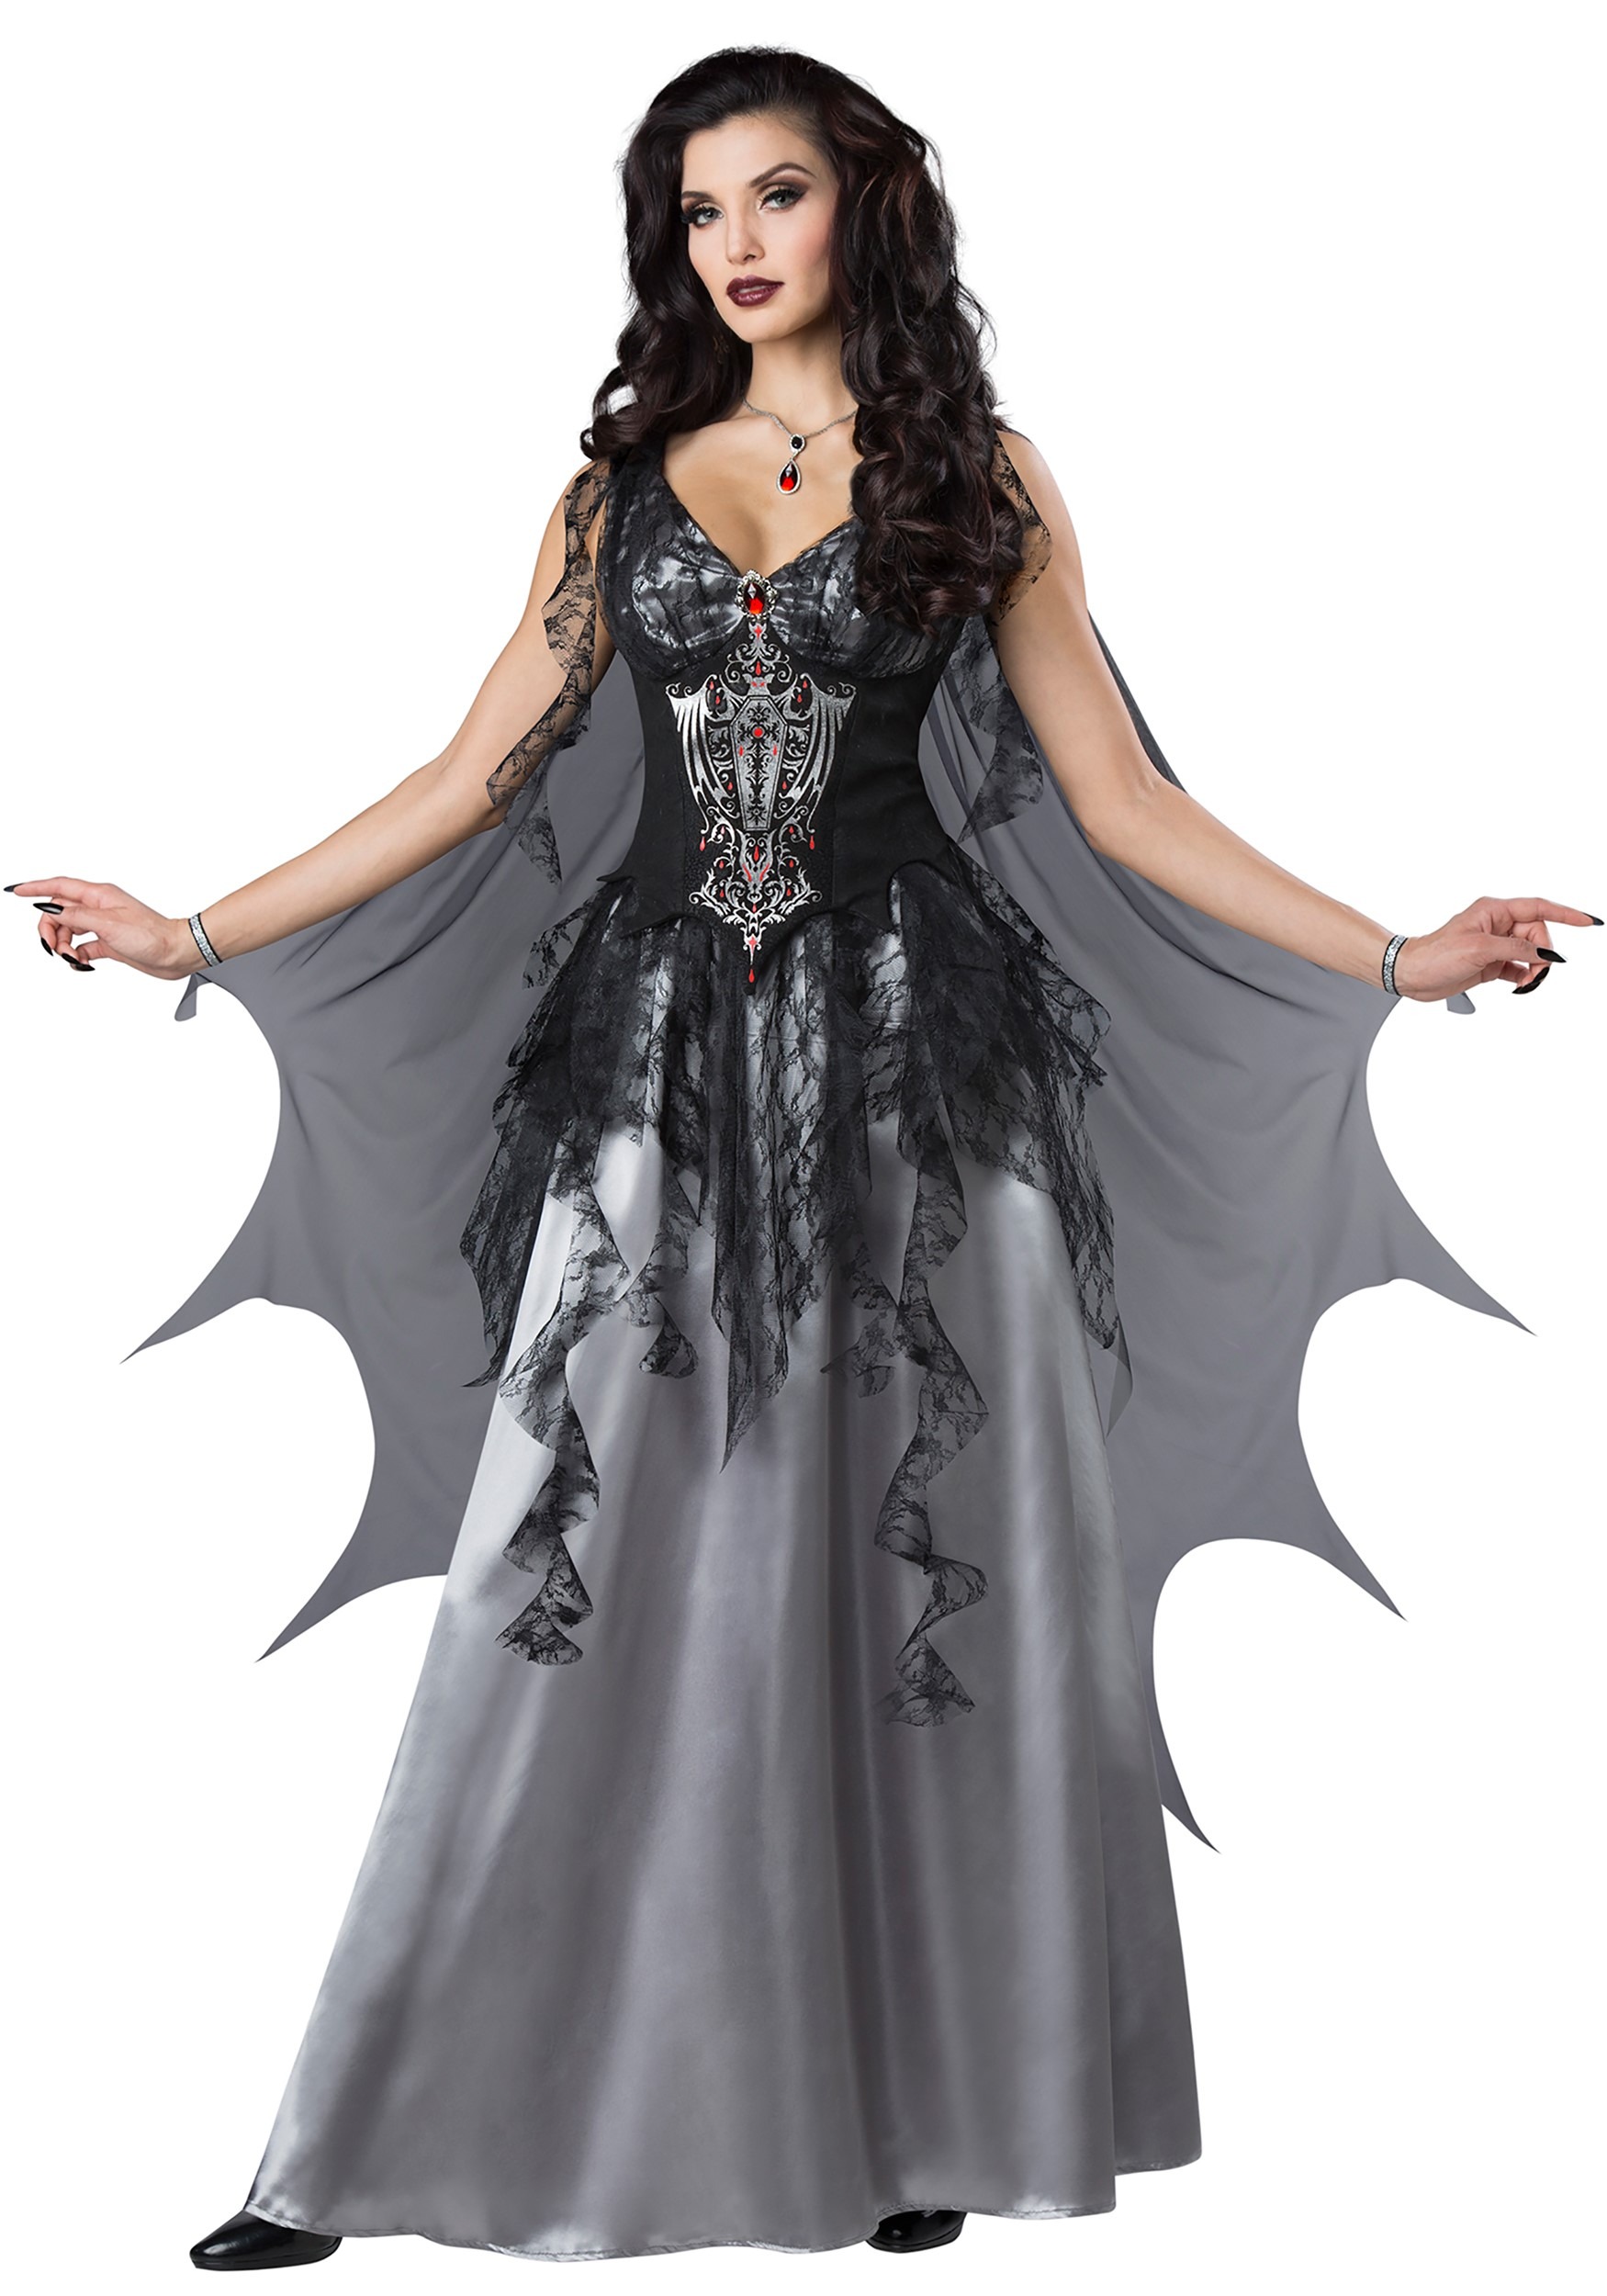 Women's Dark Vampire Countess Halloween Costume Dress